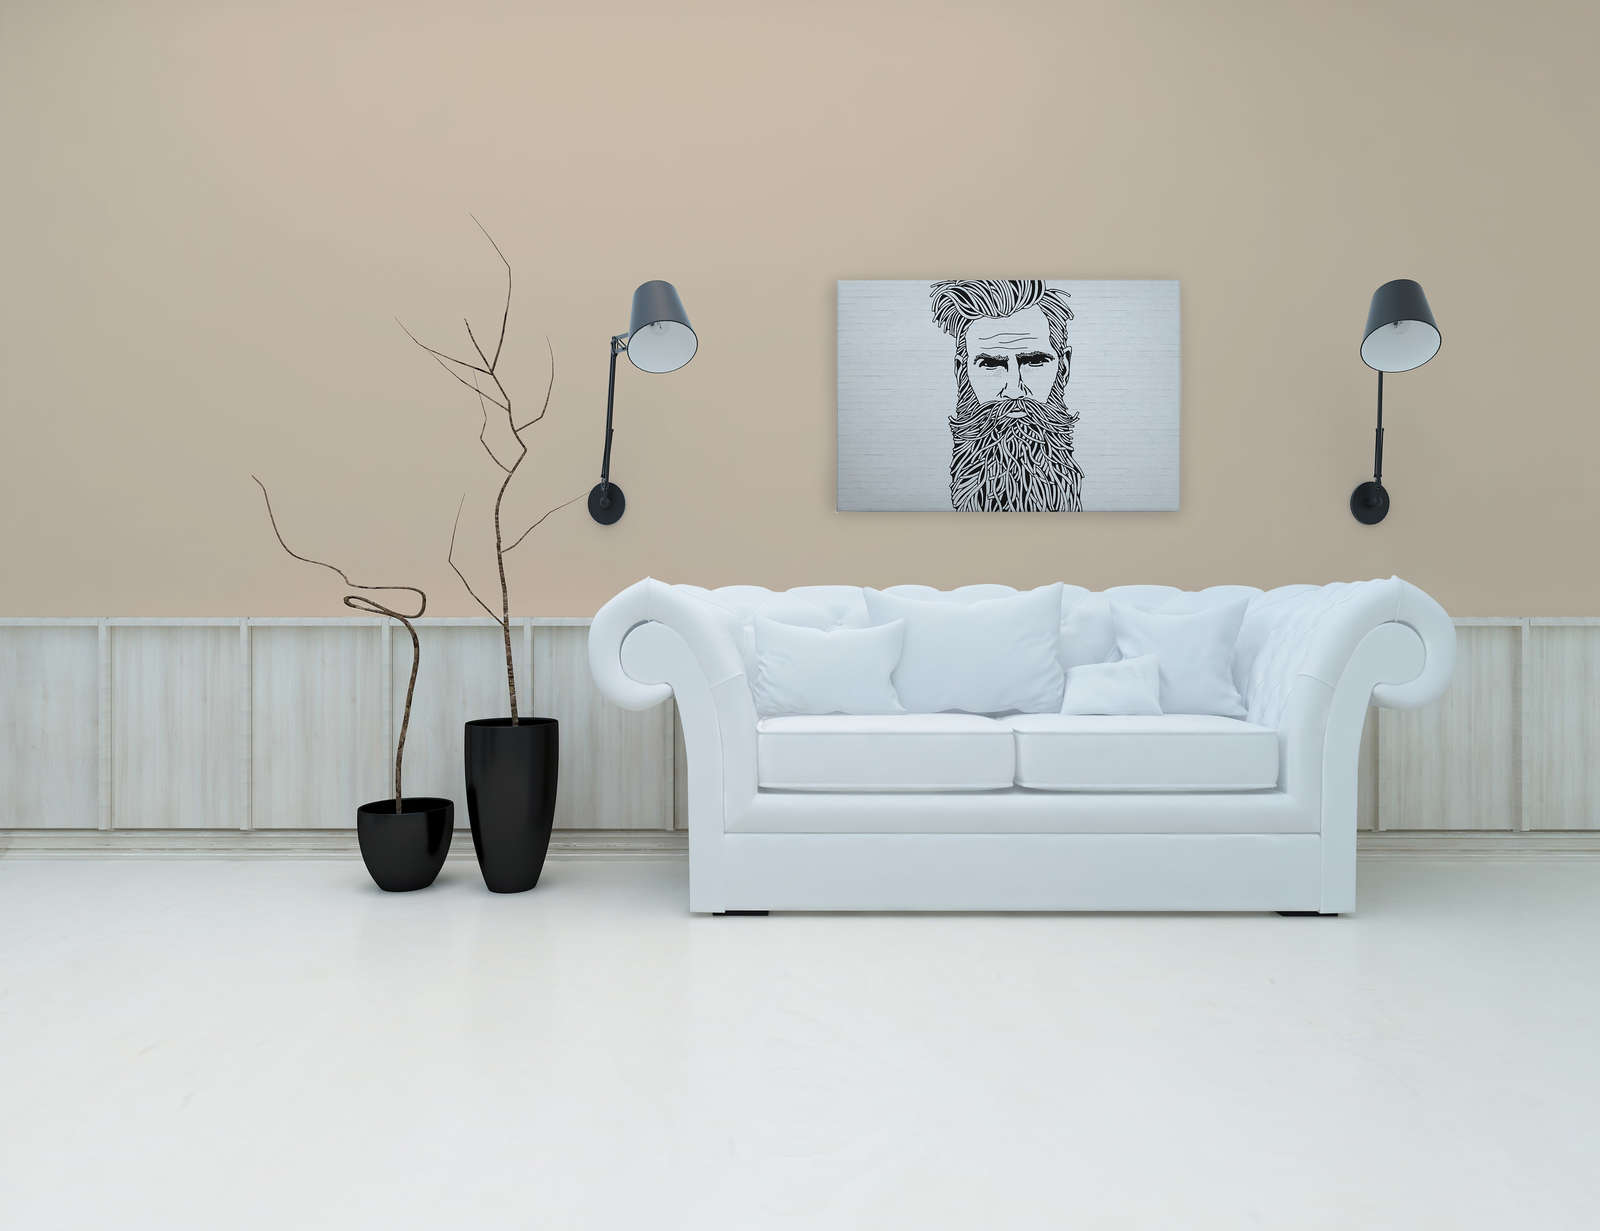             Weißes Leinwandbild Steinoptik mit Männer Portrait im Zeichenstil – 0,90 m x 0,60 m
        